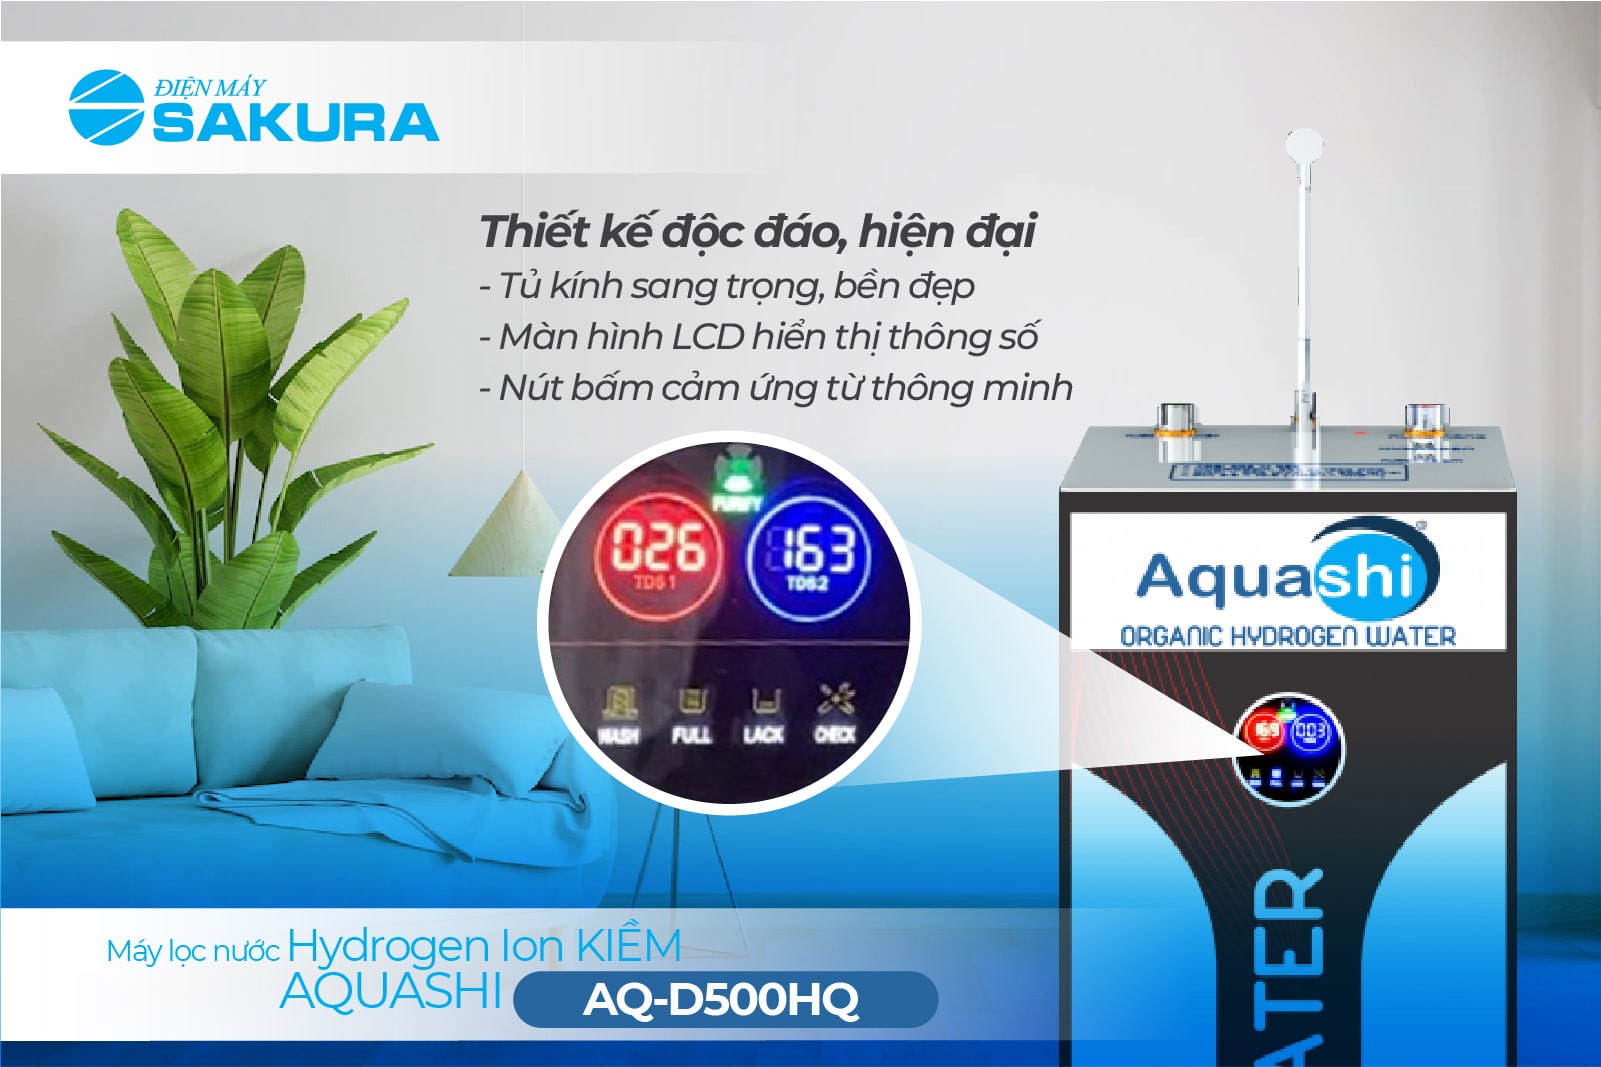 Máy lọc nước Hydrogen Aquashi AQ-D500HQ thiết kế độc đáo, dễ dàng lắp đặt